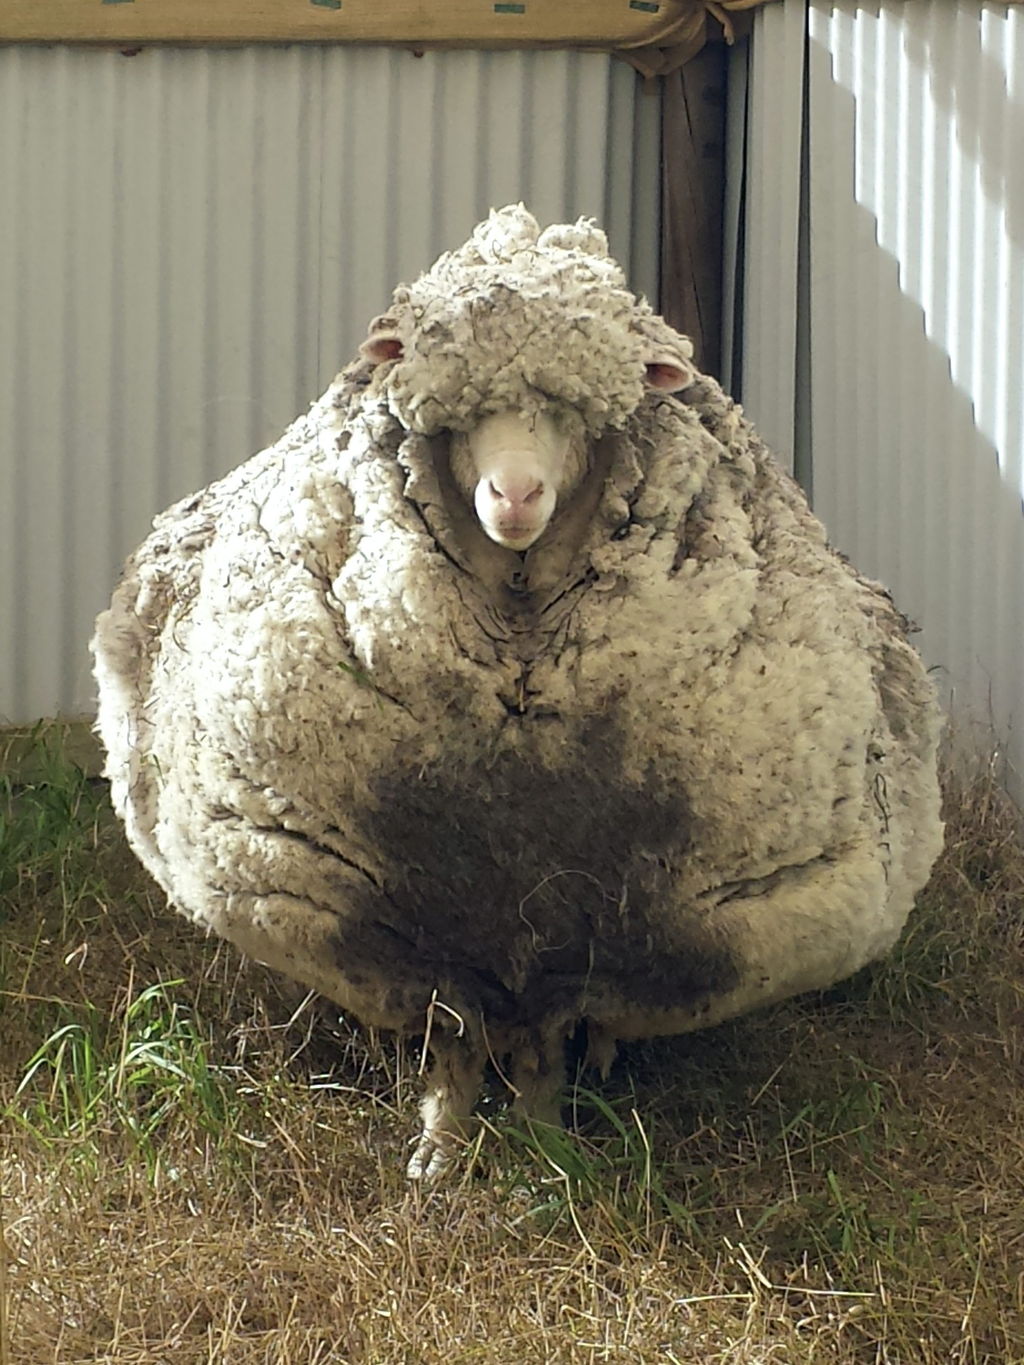 Gigante. La oveja tiene entre cuatro y cinco veces su tamaño normal, señalan.